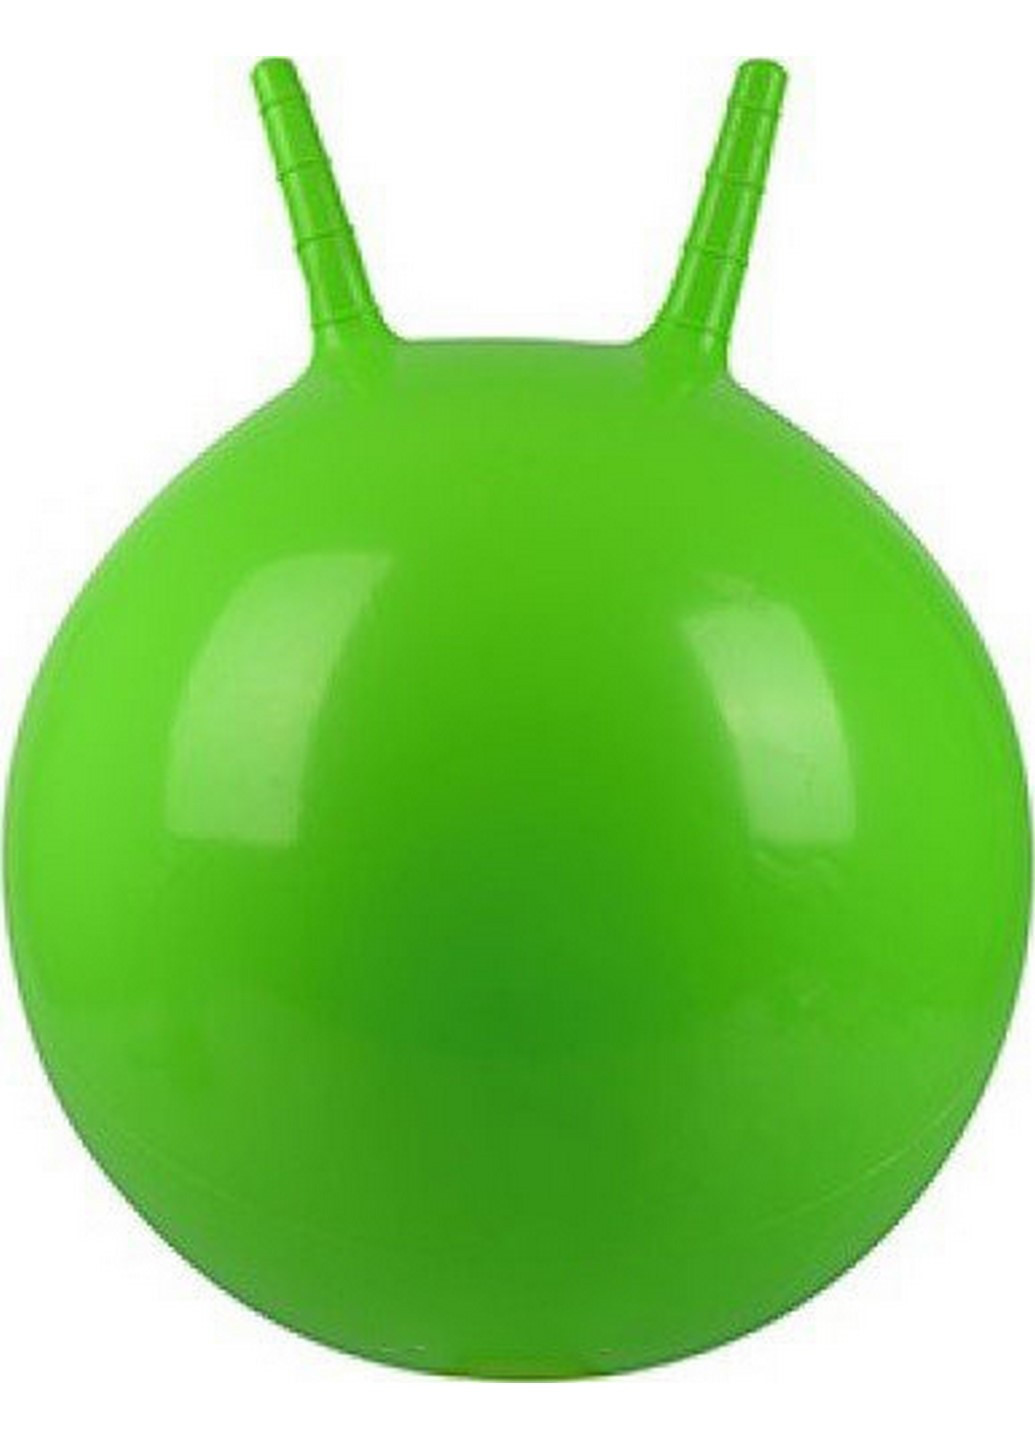 М'яч для фітнесу з ріжками MS 0380 45см (Зелений) Profi (238104960)